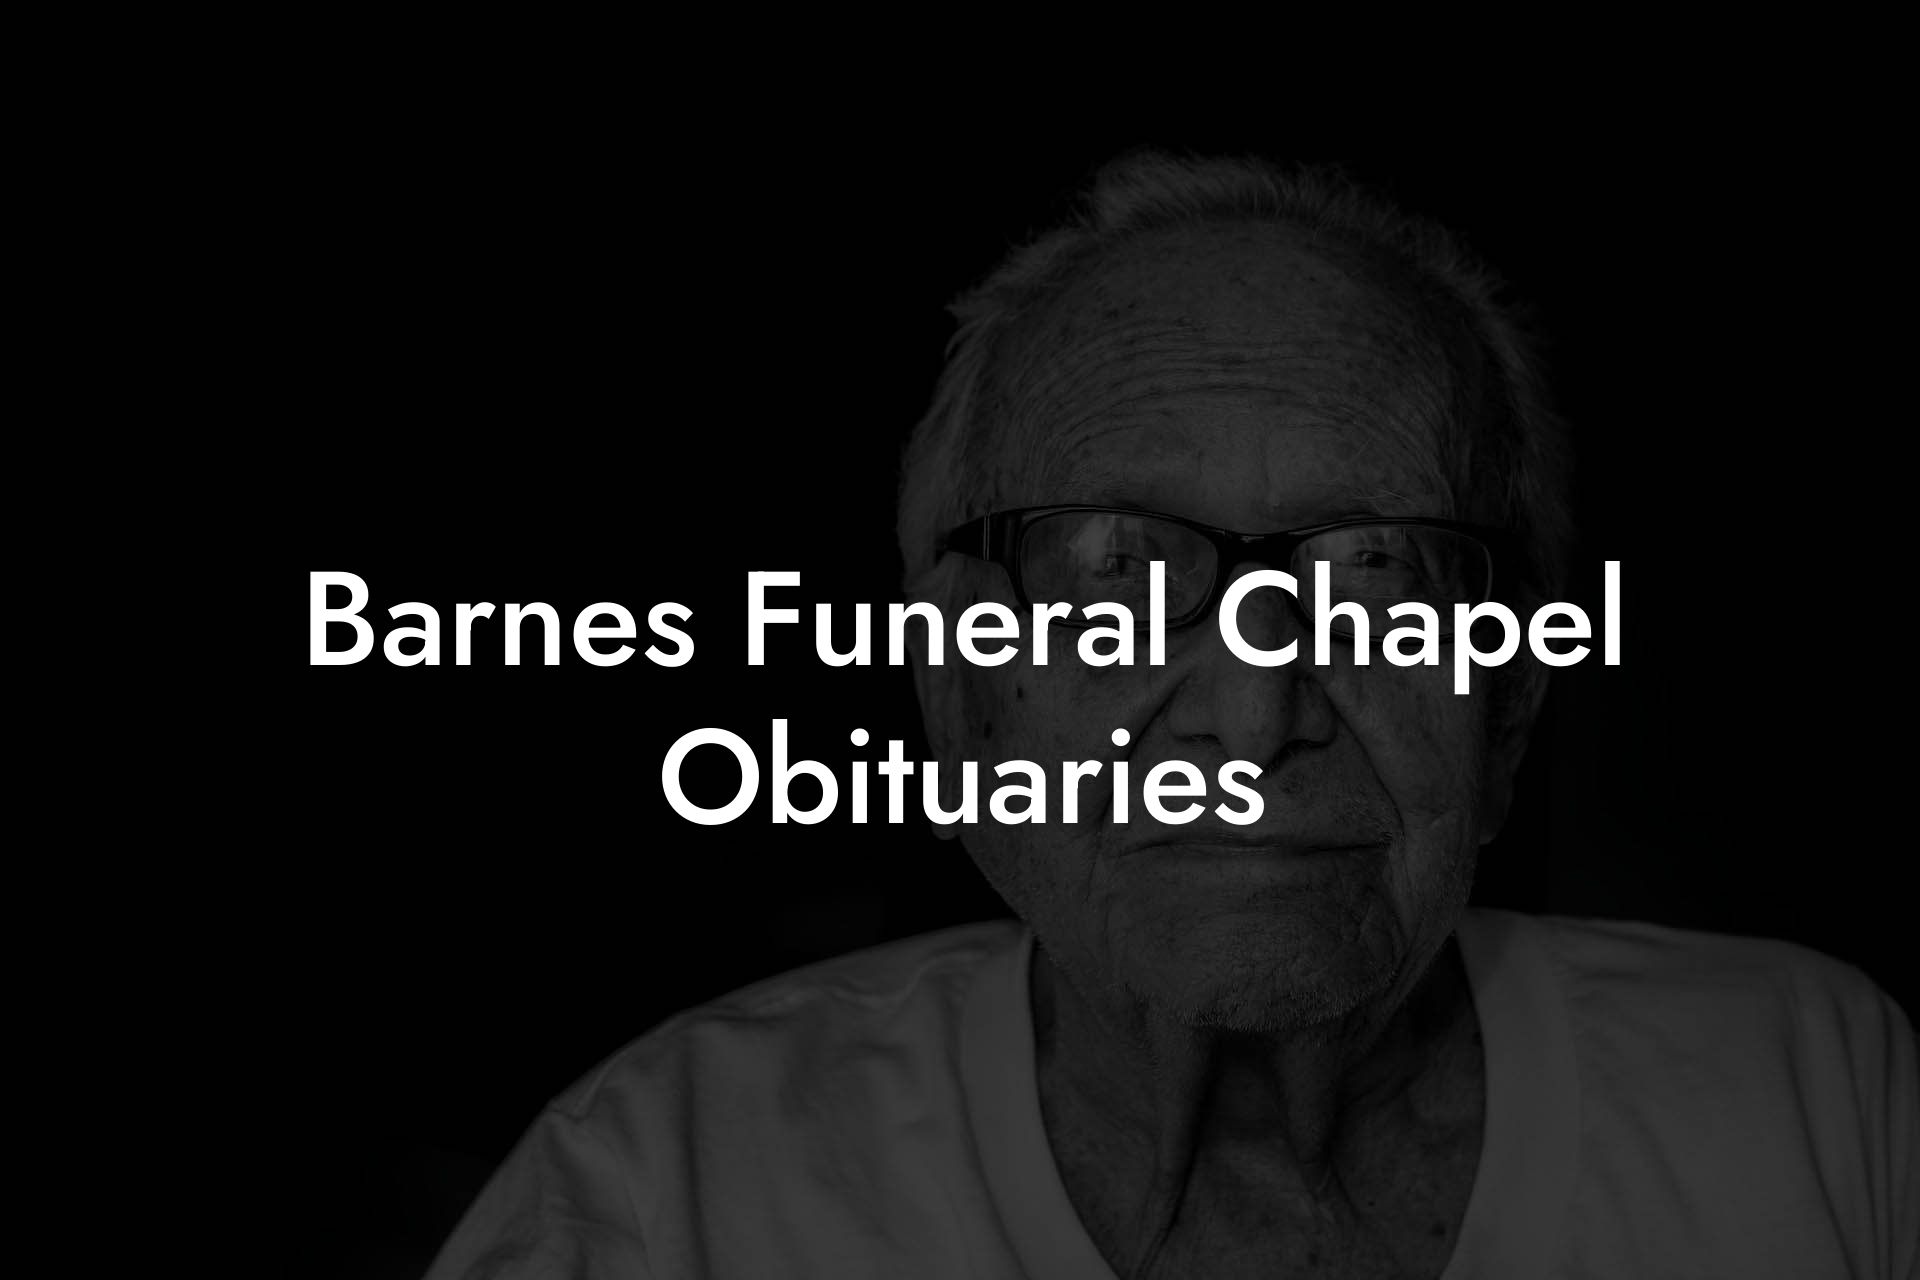 Barnes Funeral Chapel Obituaries